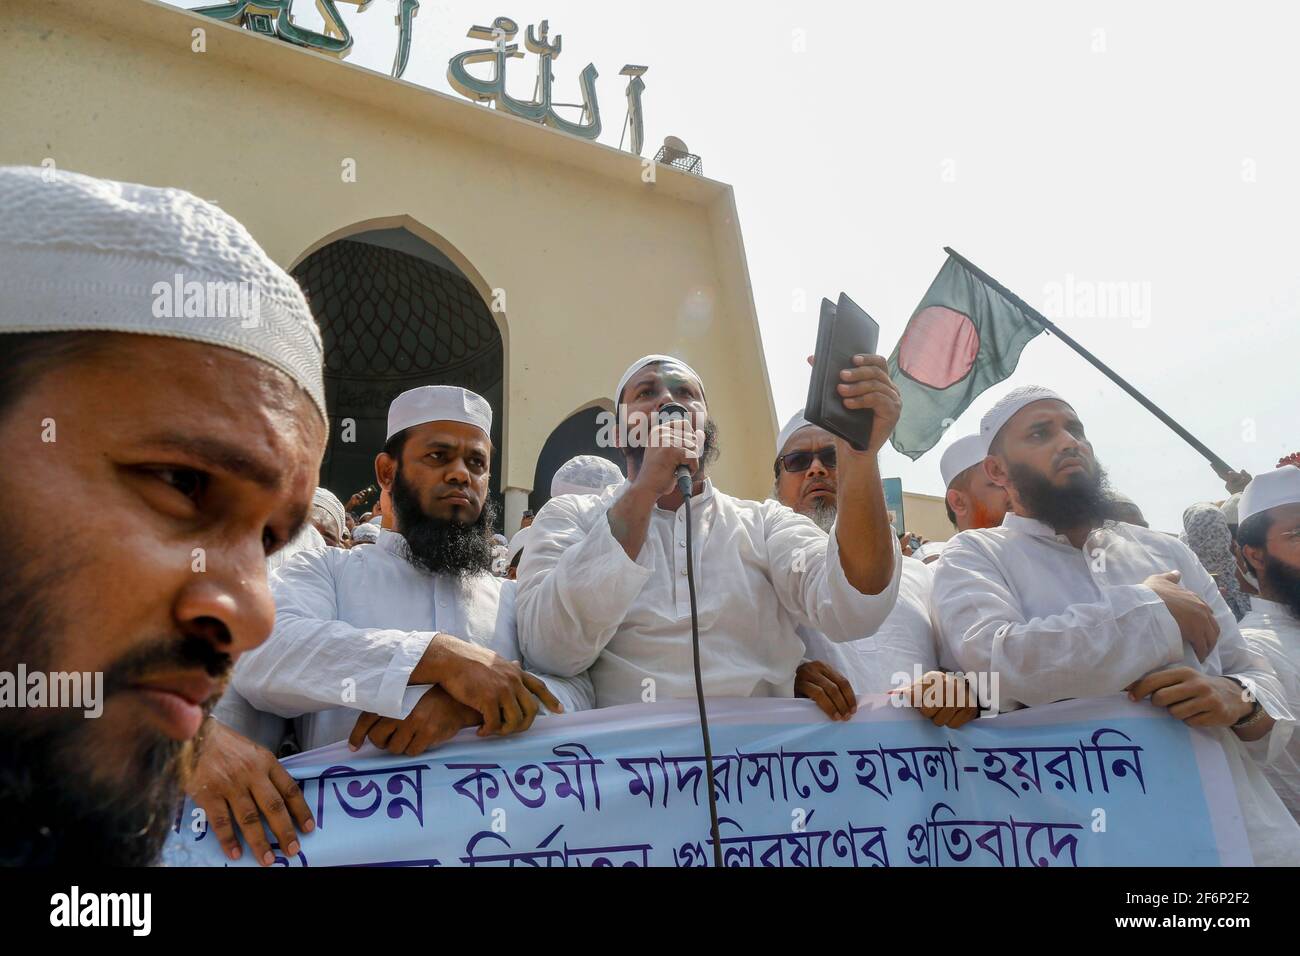 2 avril 2021, Dhaka, Bangladesh: Hefajat-e-Islam Bangladesh a organisé une manifestation devant la mosquée nationale Baitul Mukarram pour protester contre la mort de ses militants lors d'affrontements avec des agents de police pendant trois jours, à Dhaka, au Bangladesh, le 2 avril 2021. (Image crédit: © Suvra Kanti Das/ZUMA Wire) Banque D'Images